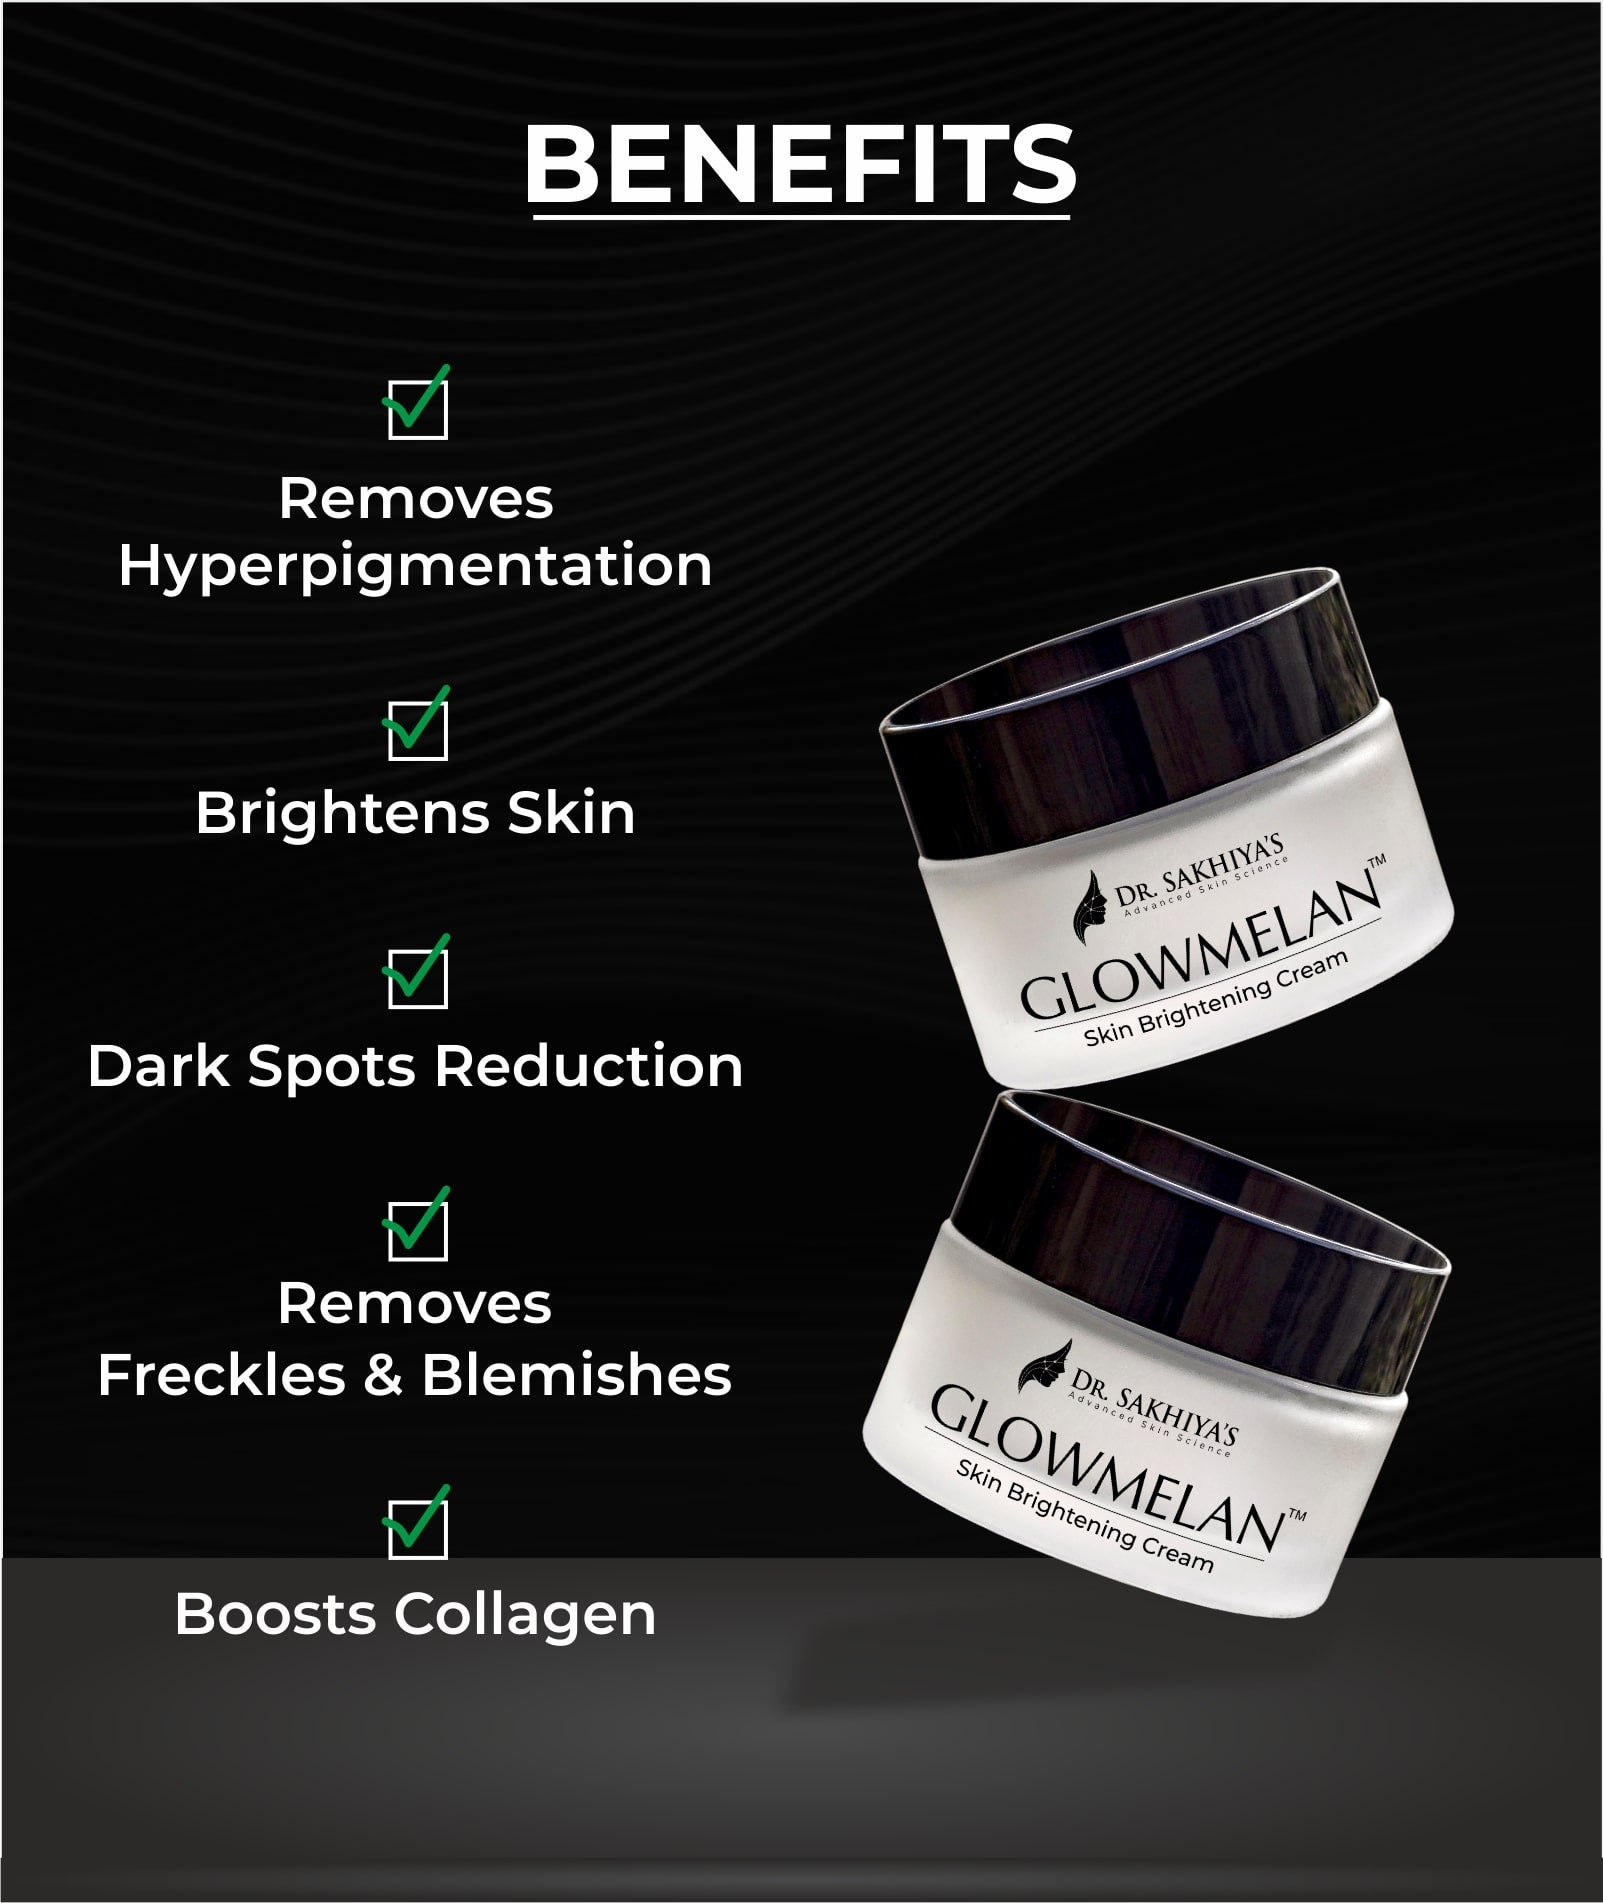 Benefits of Dr. Sakhiya's Glowmelan Cream